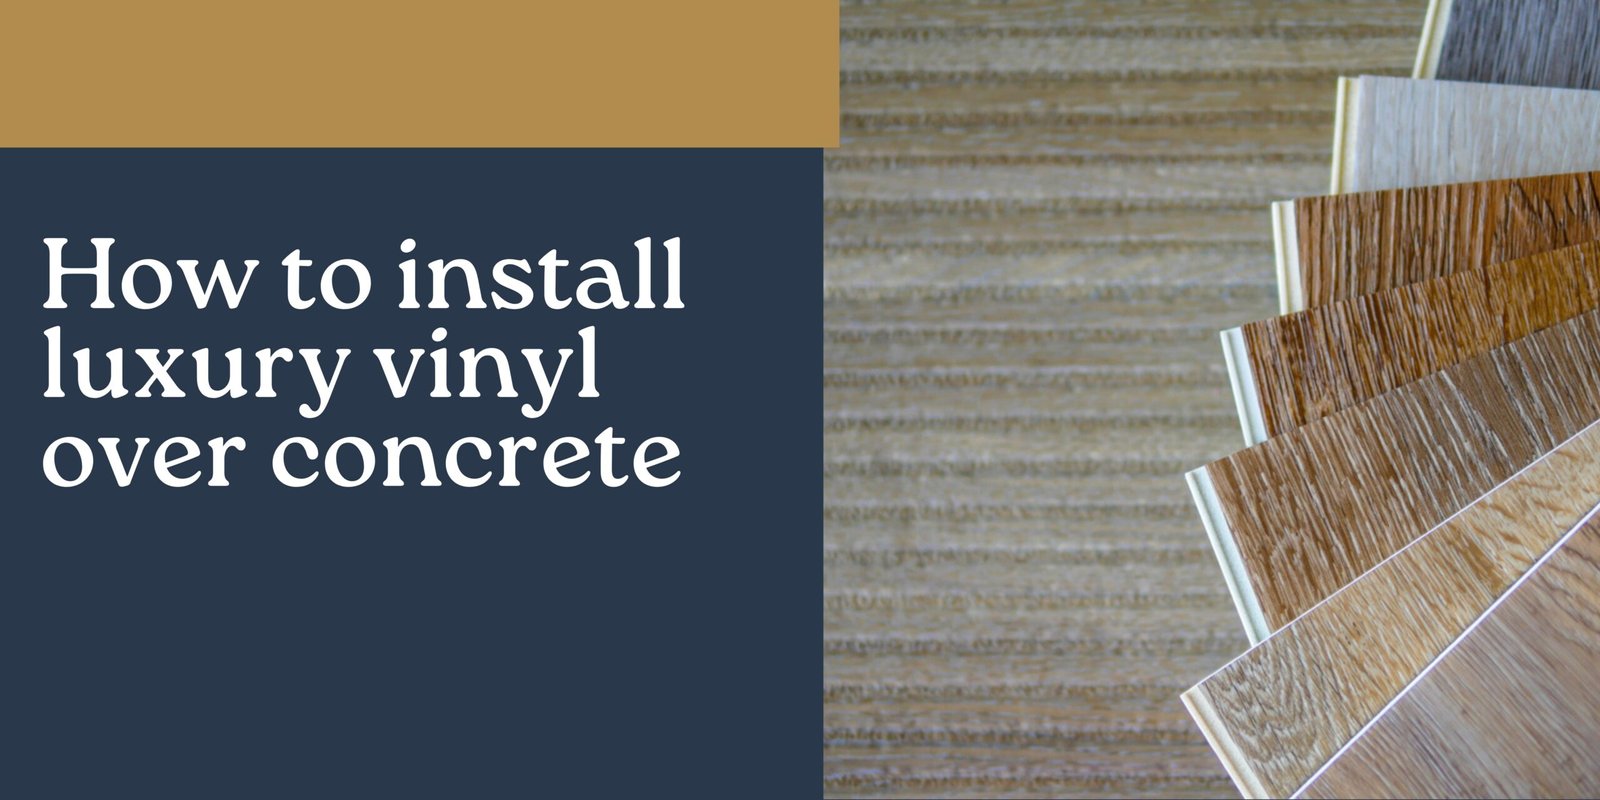 How to install luxury vinyl over concrete